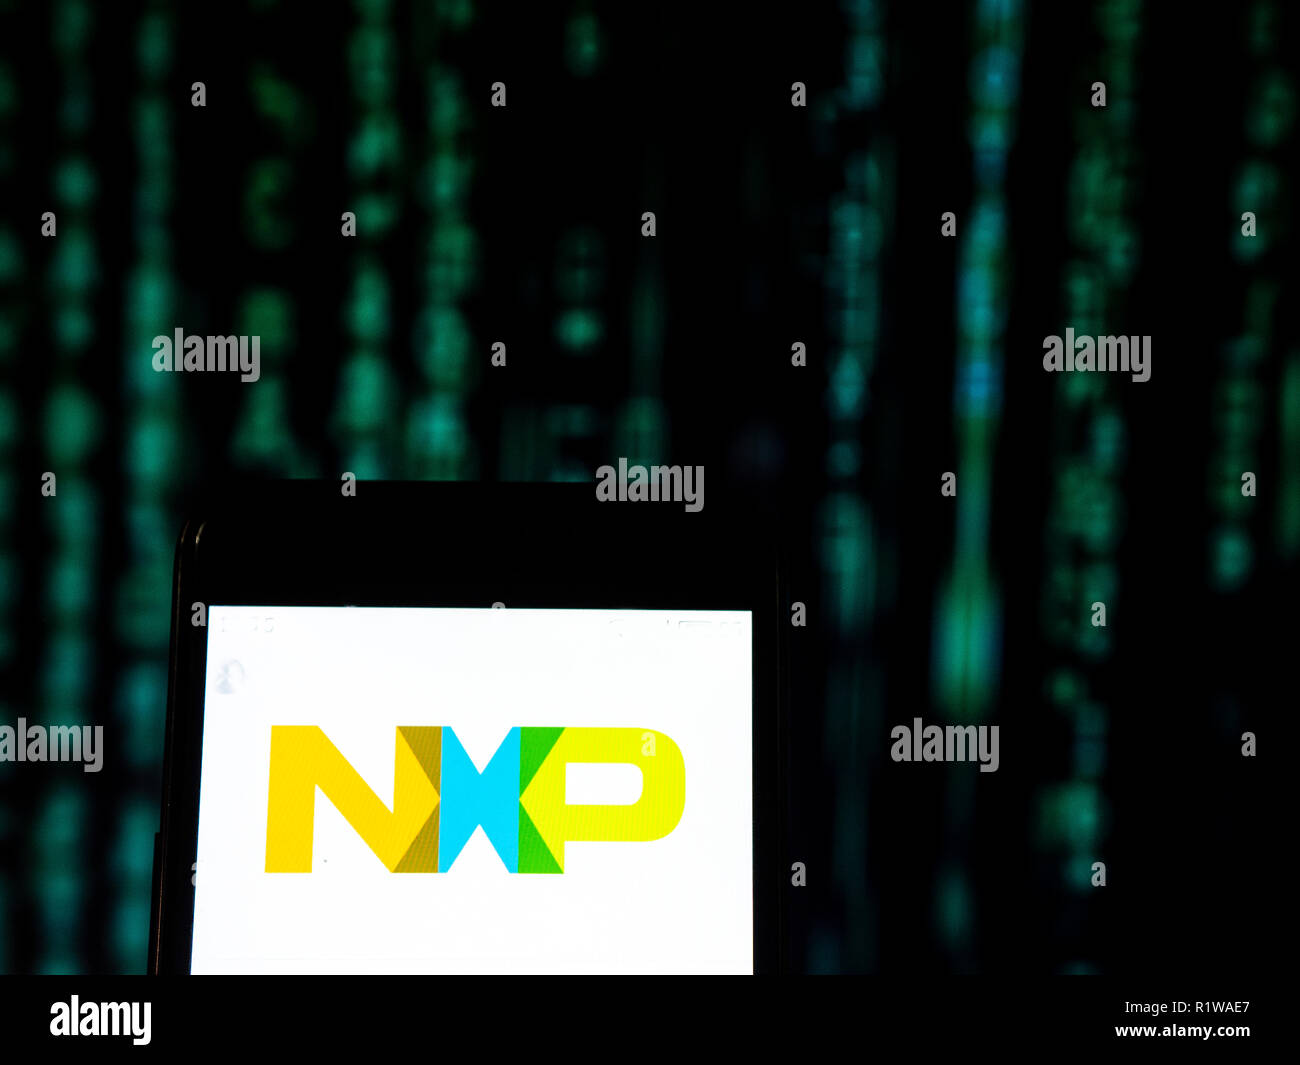 NXP Semiconductors, société de fabrication de semi-conducteurs, vu le logo  affiché sur le téléphone intelligent. NXP Semiconductors N.V. est un leader  mondial fabricant de semi-conducteurs basé à Eindhoven, Pays-Bas. La  société emploie